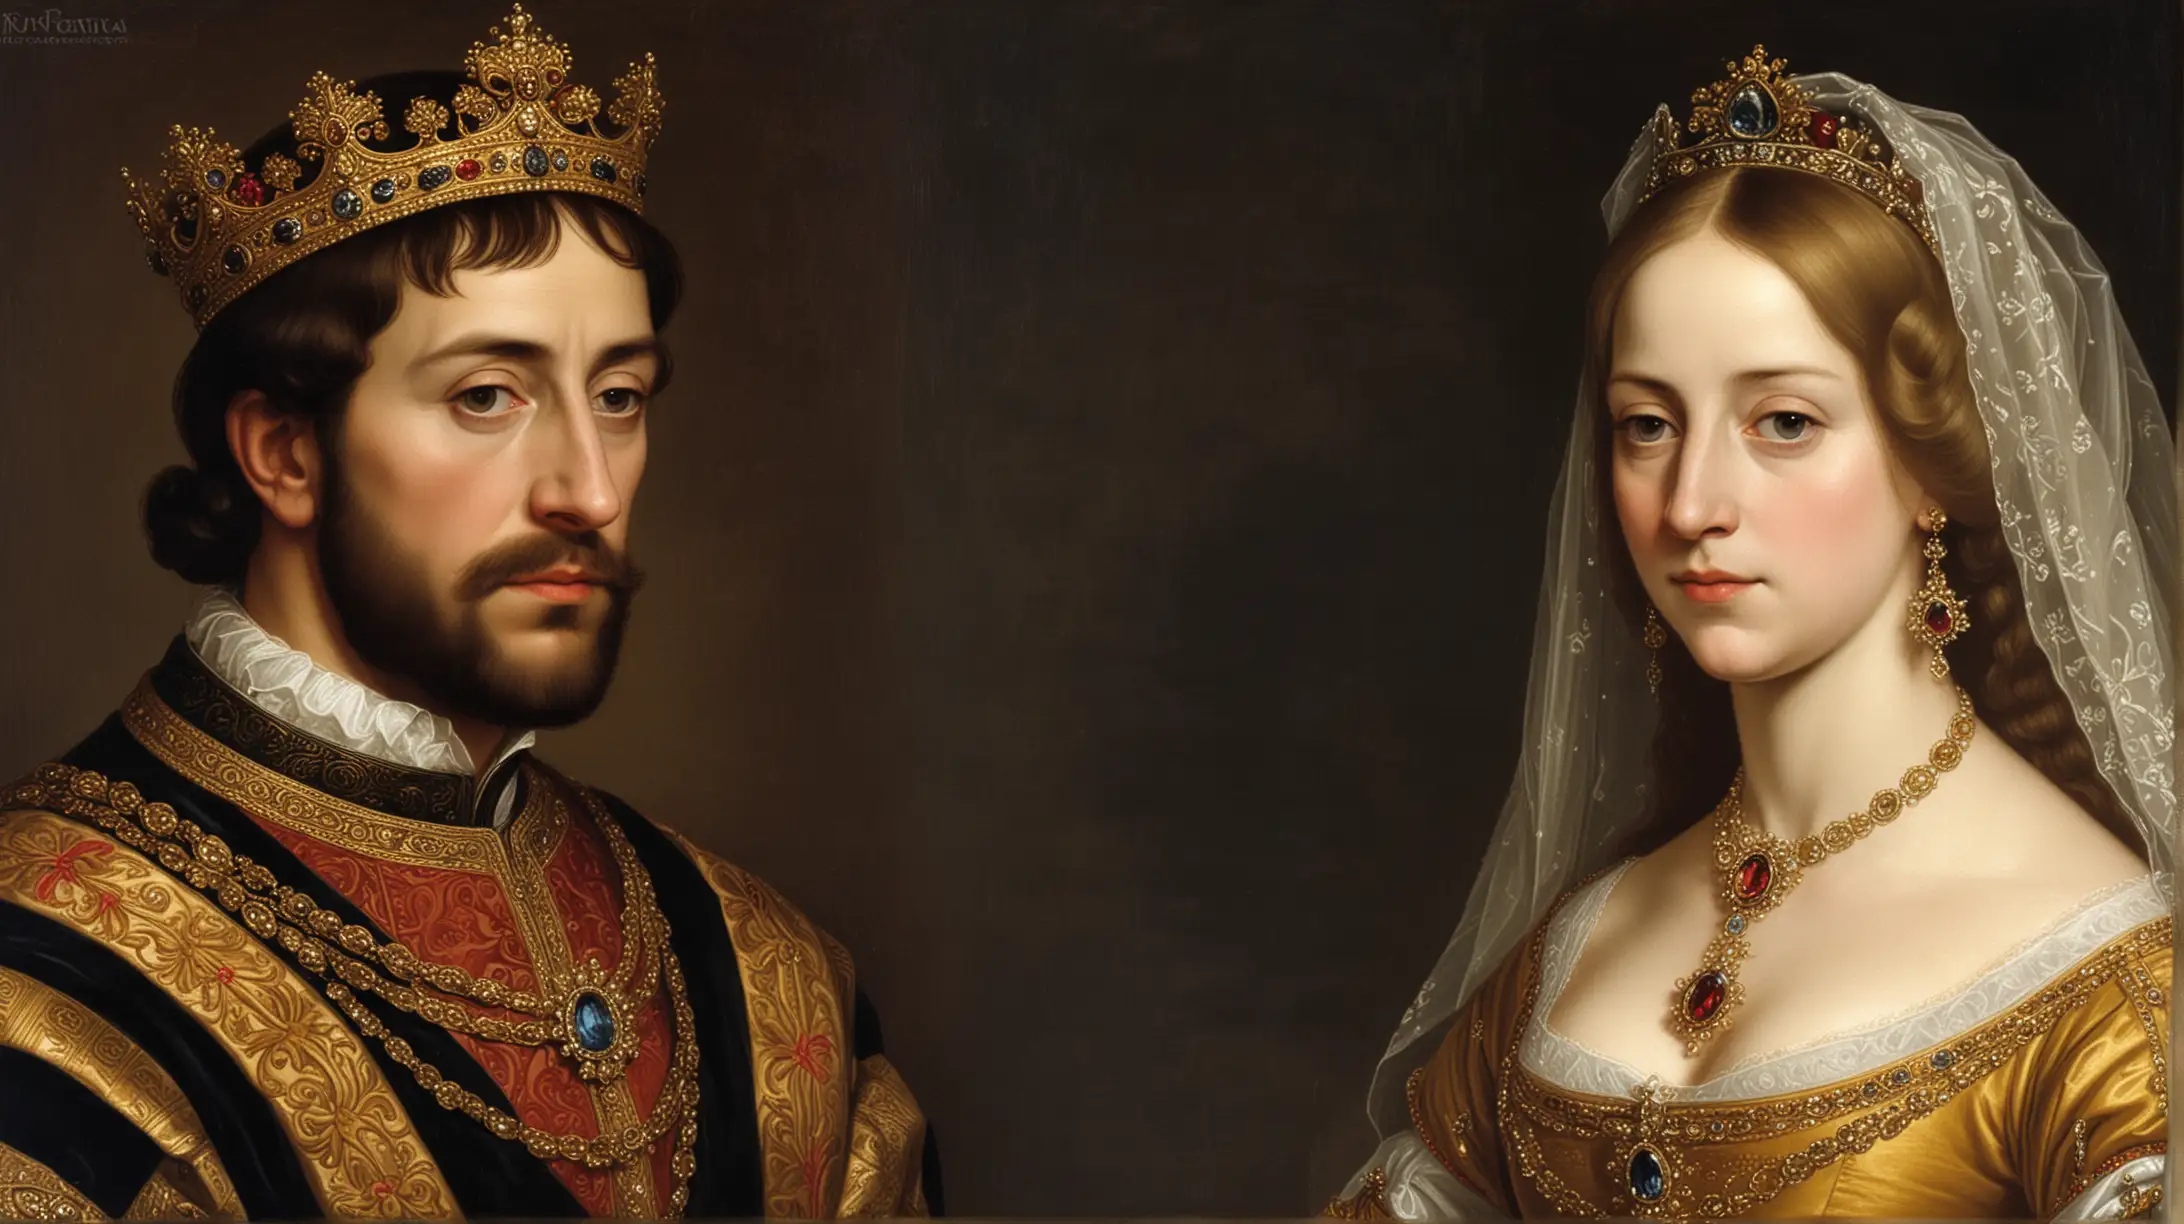 Isabel I de Castilla y Fernando II de Aragón, conocidos como los Reyes Católicos, se unieron en matrimonio en 1469, consolidando así una alianza dinástica que se convertiría en la base de la futura unificación de España. Su reinado, que comenzó en 1474 con la muerte del rey Enrique IV de Castilla, marcó un período crucial en la historia de España.